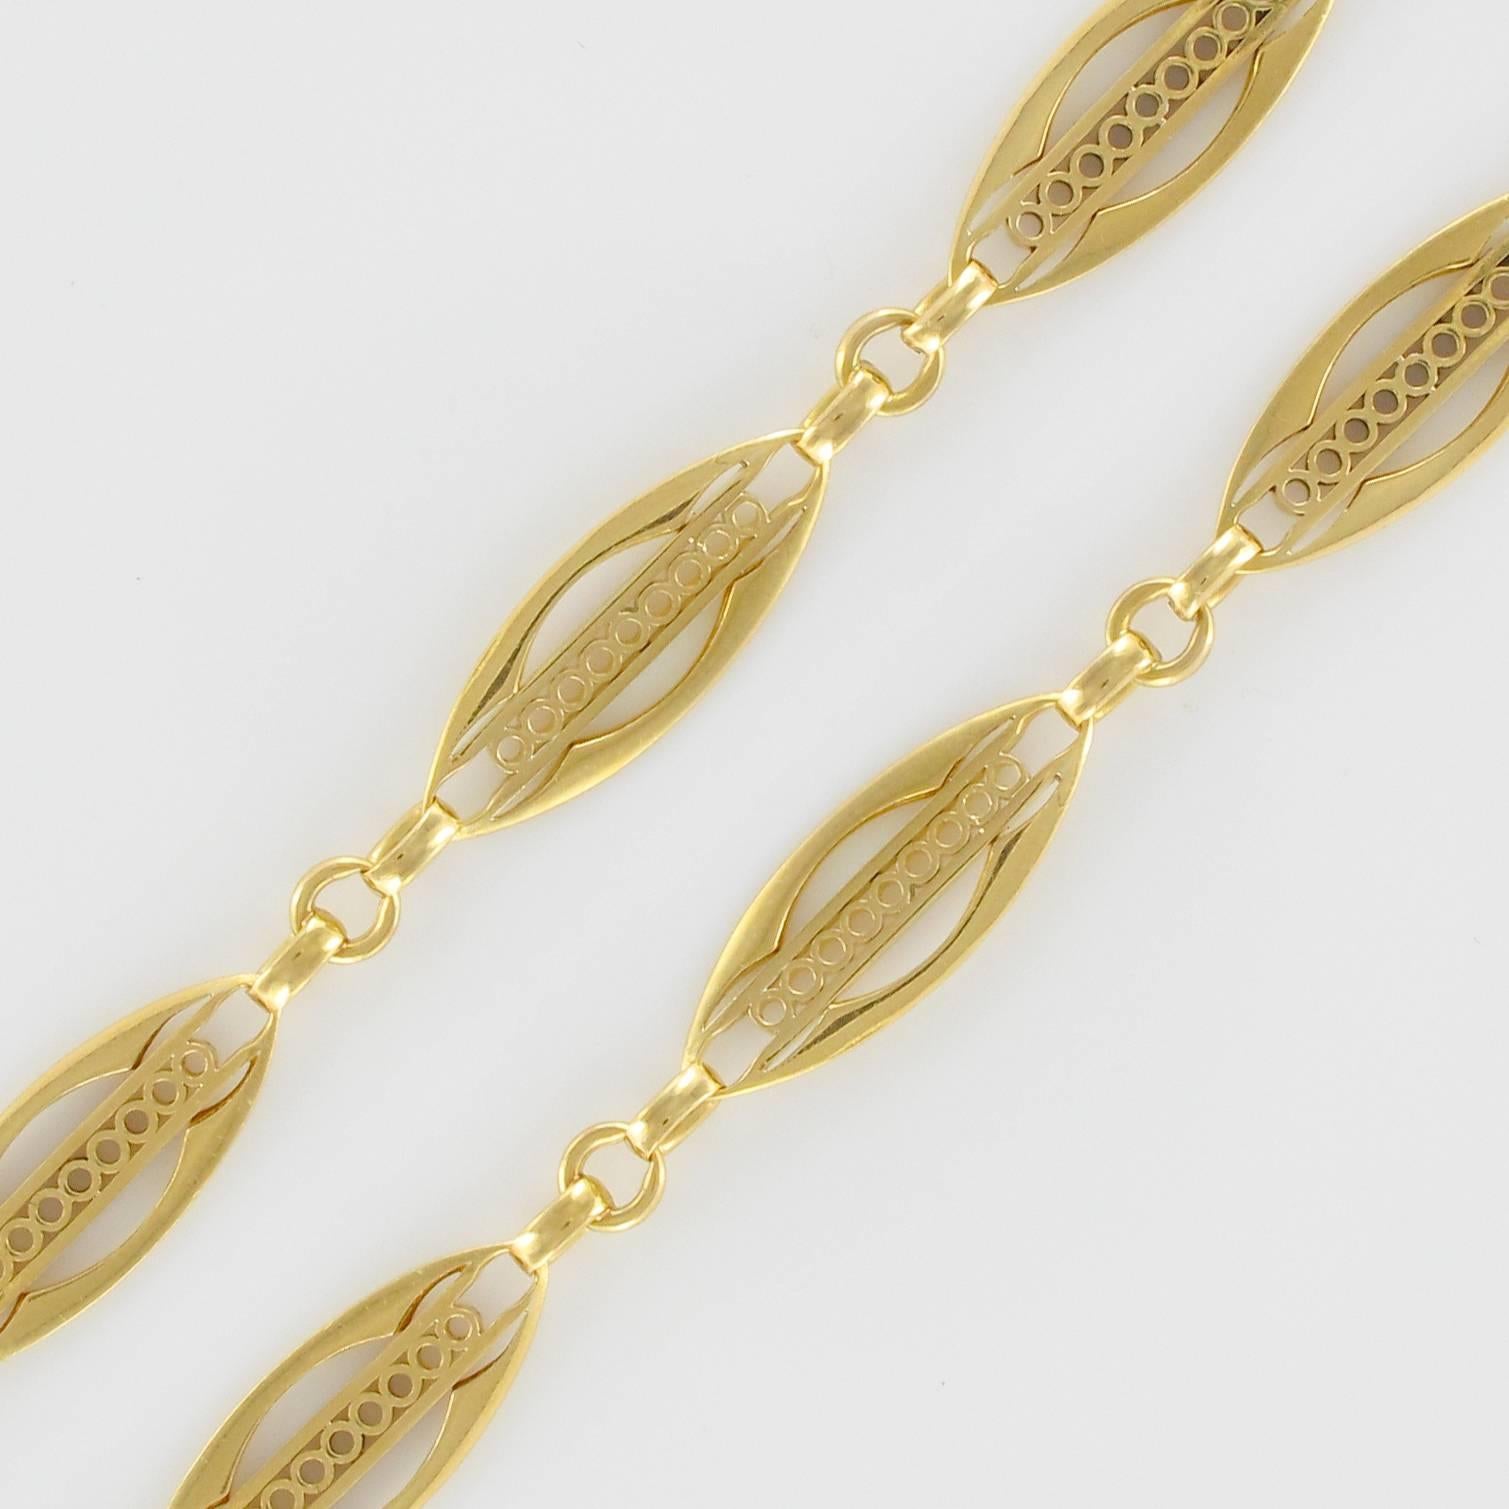 1900s French Belle Époque 18 Carat Yellow Gold Link Chain Bracelet 1